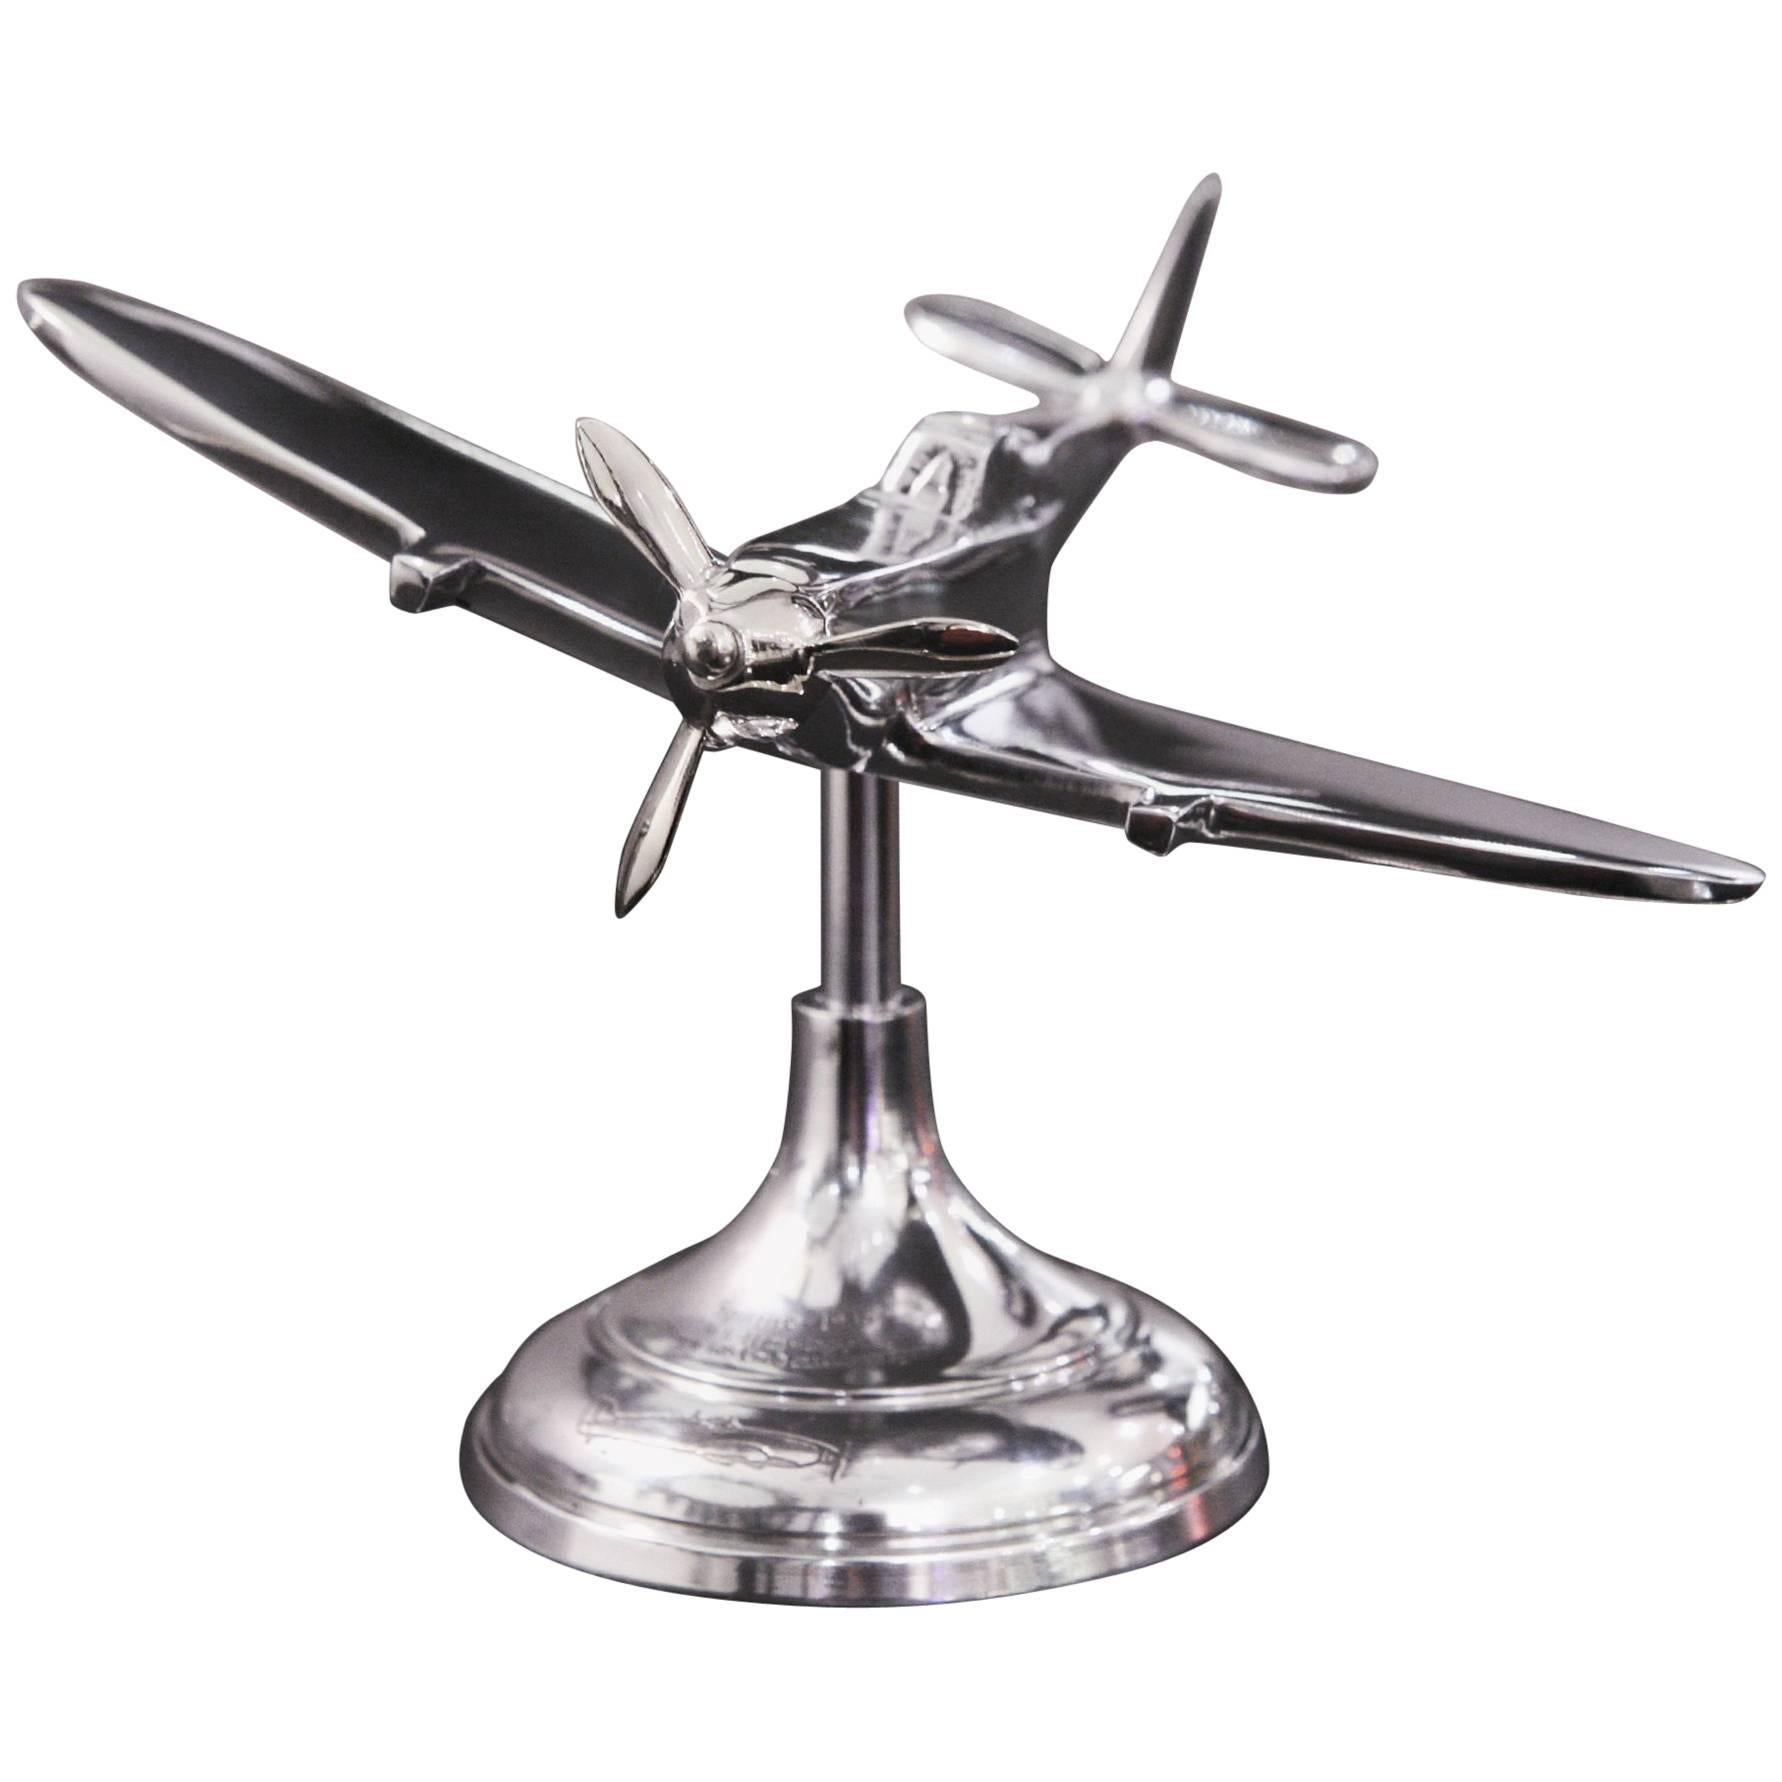 Spitfire-Modell auf Ständer aus Aluminium, Silber poliert